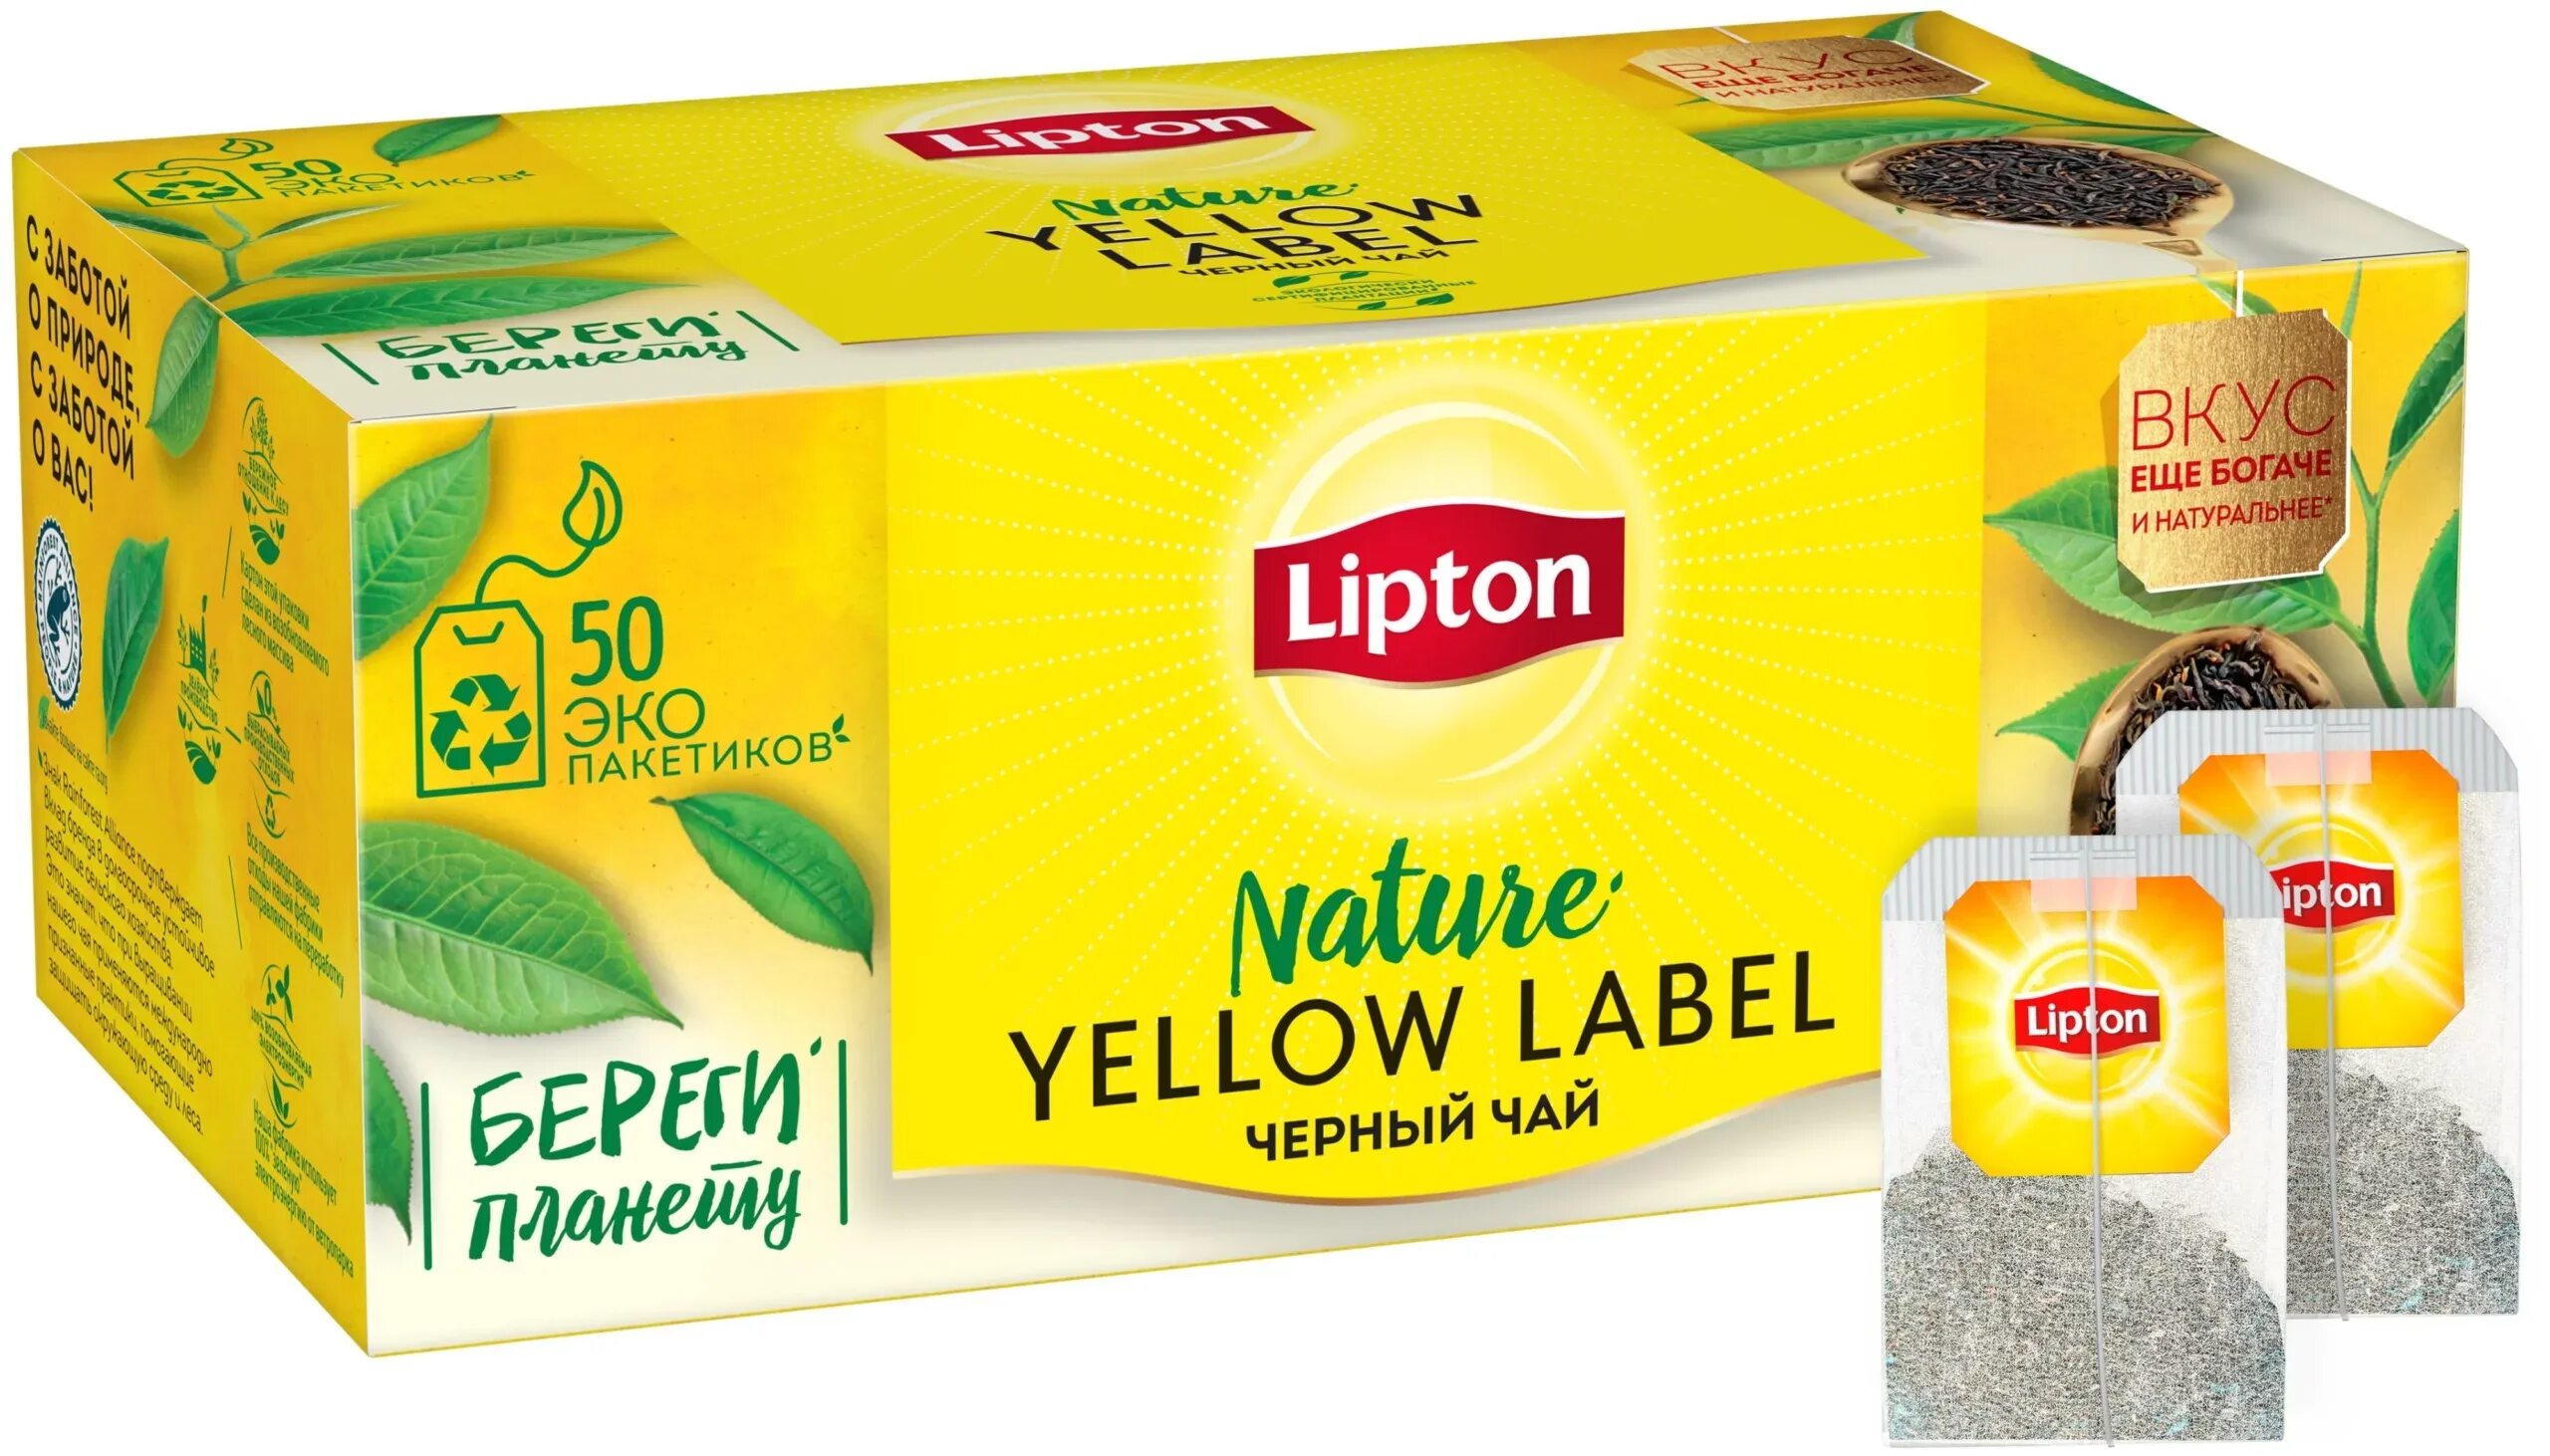 Чай 50 пакетов. Чай черный Lipton Yellow Label 25 пак.. Lipton Yellow Label Tea. Липтон зеленый чай 0,2. Сколько стоит Липтон.